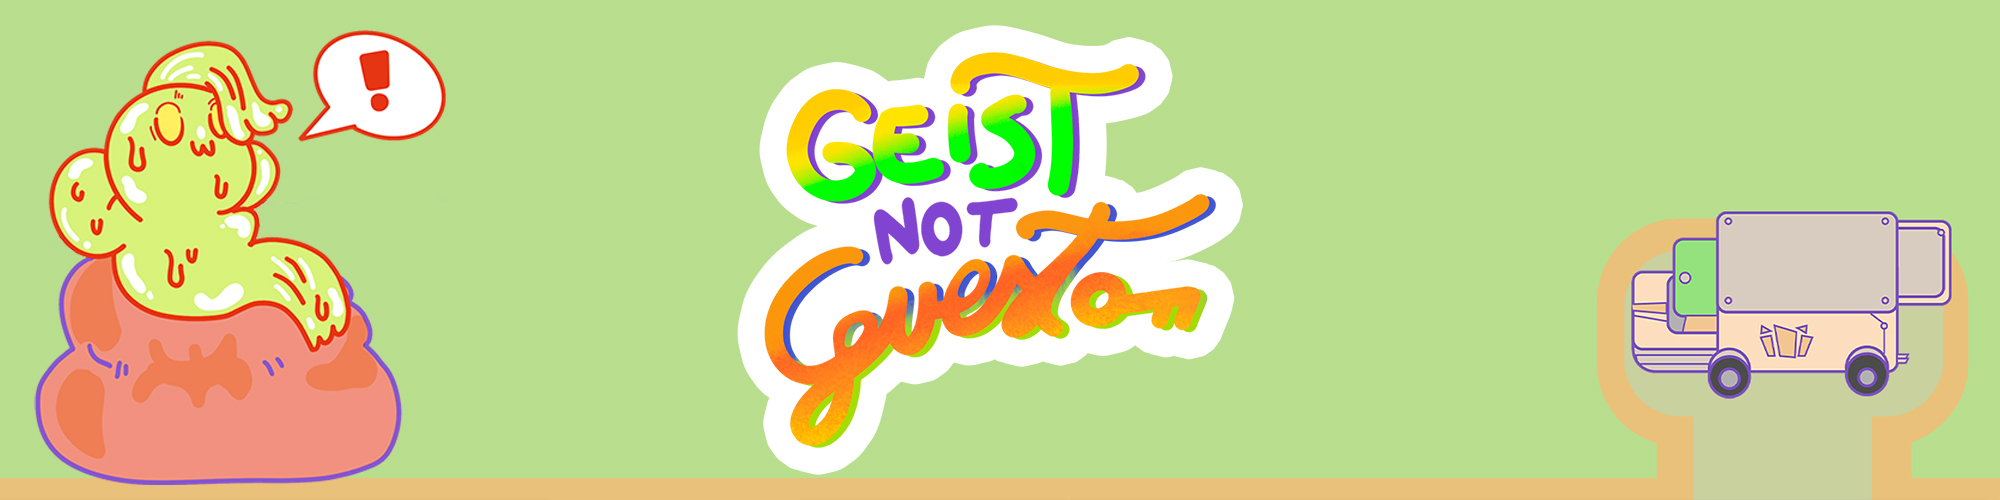 Geist Not Guest